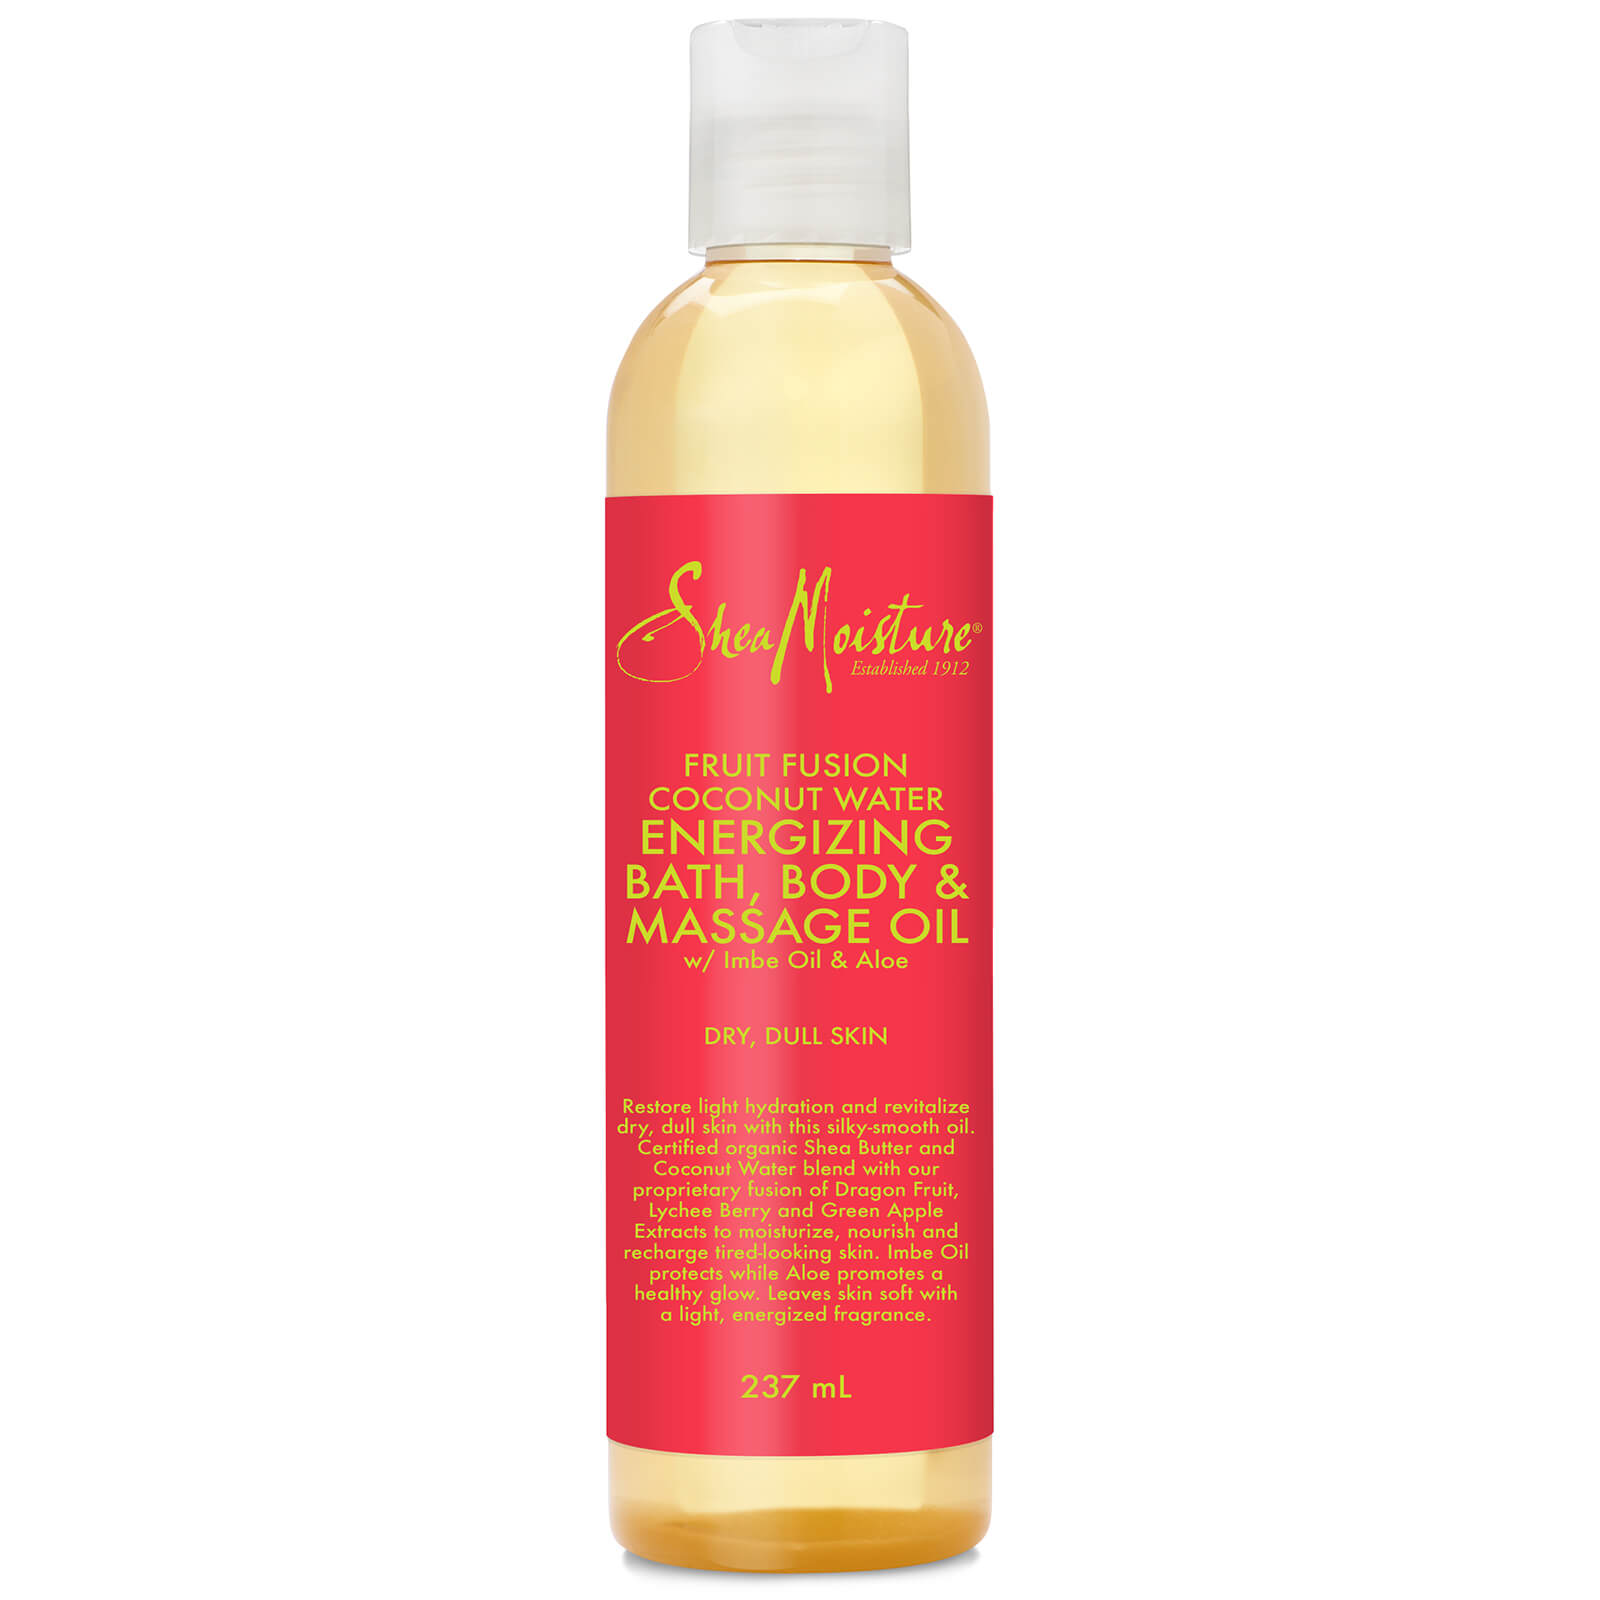 Aceite energizante frutal de masaje, cuerpo y baño de Shea Moisture 237 ml